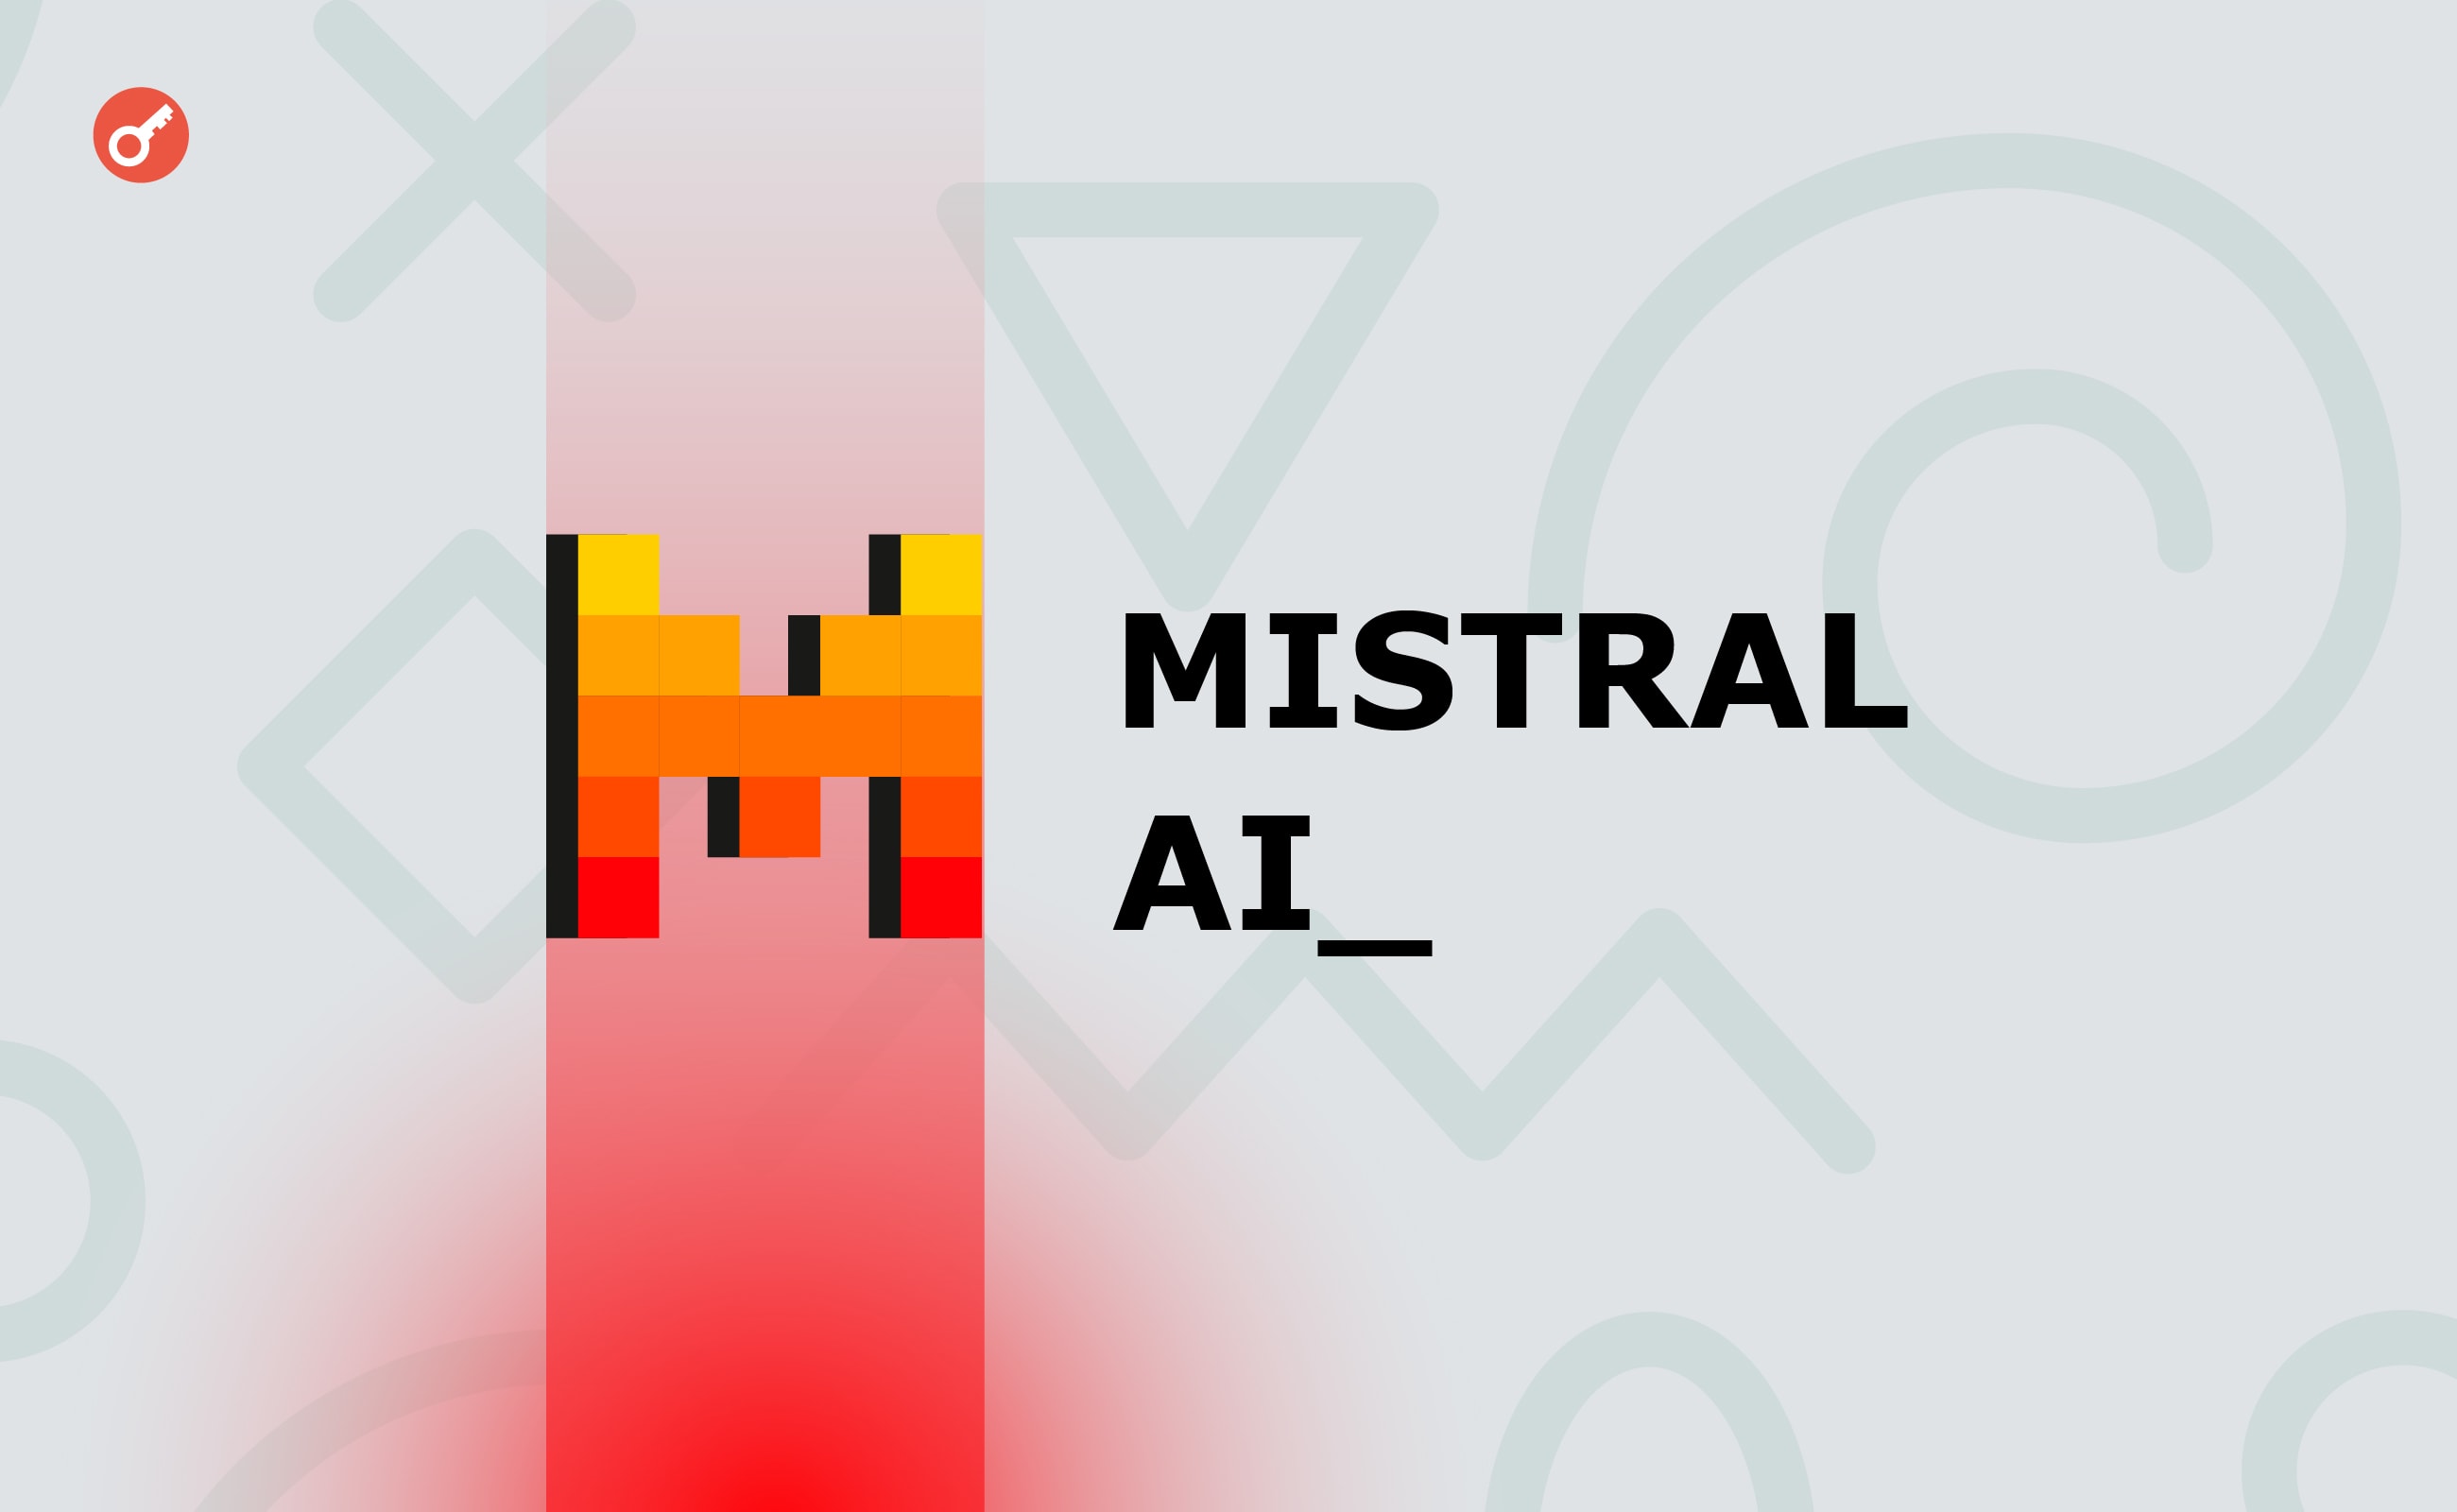 Стартап Mistral AI залучив понад $640 млн у рамках раунду серії B. Головний колаж новини.